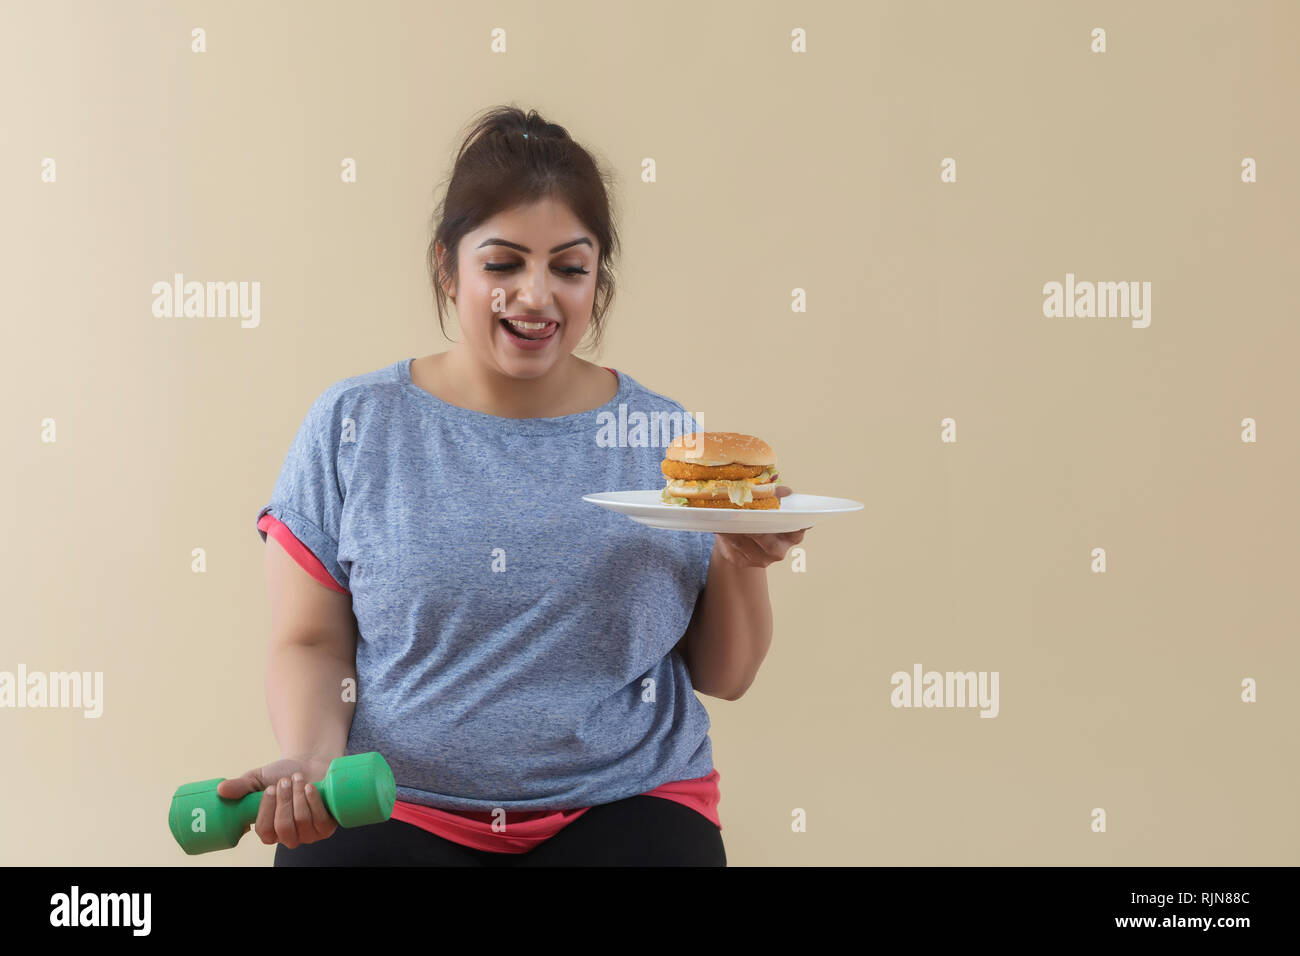 Sorridente Donna sovrappeso tenendo un burger e un manubrio Foto Stock